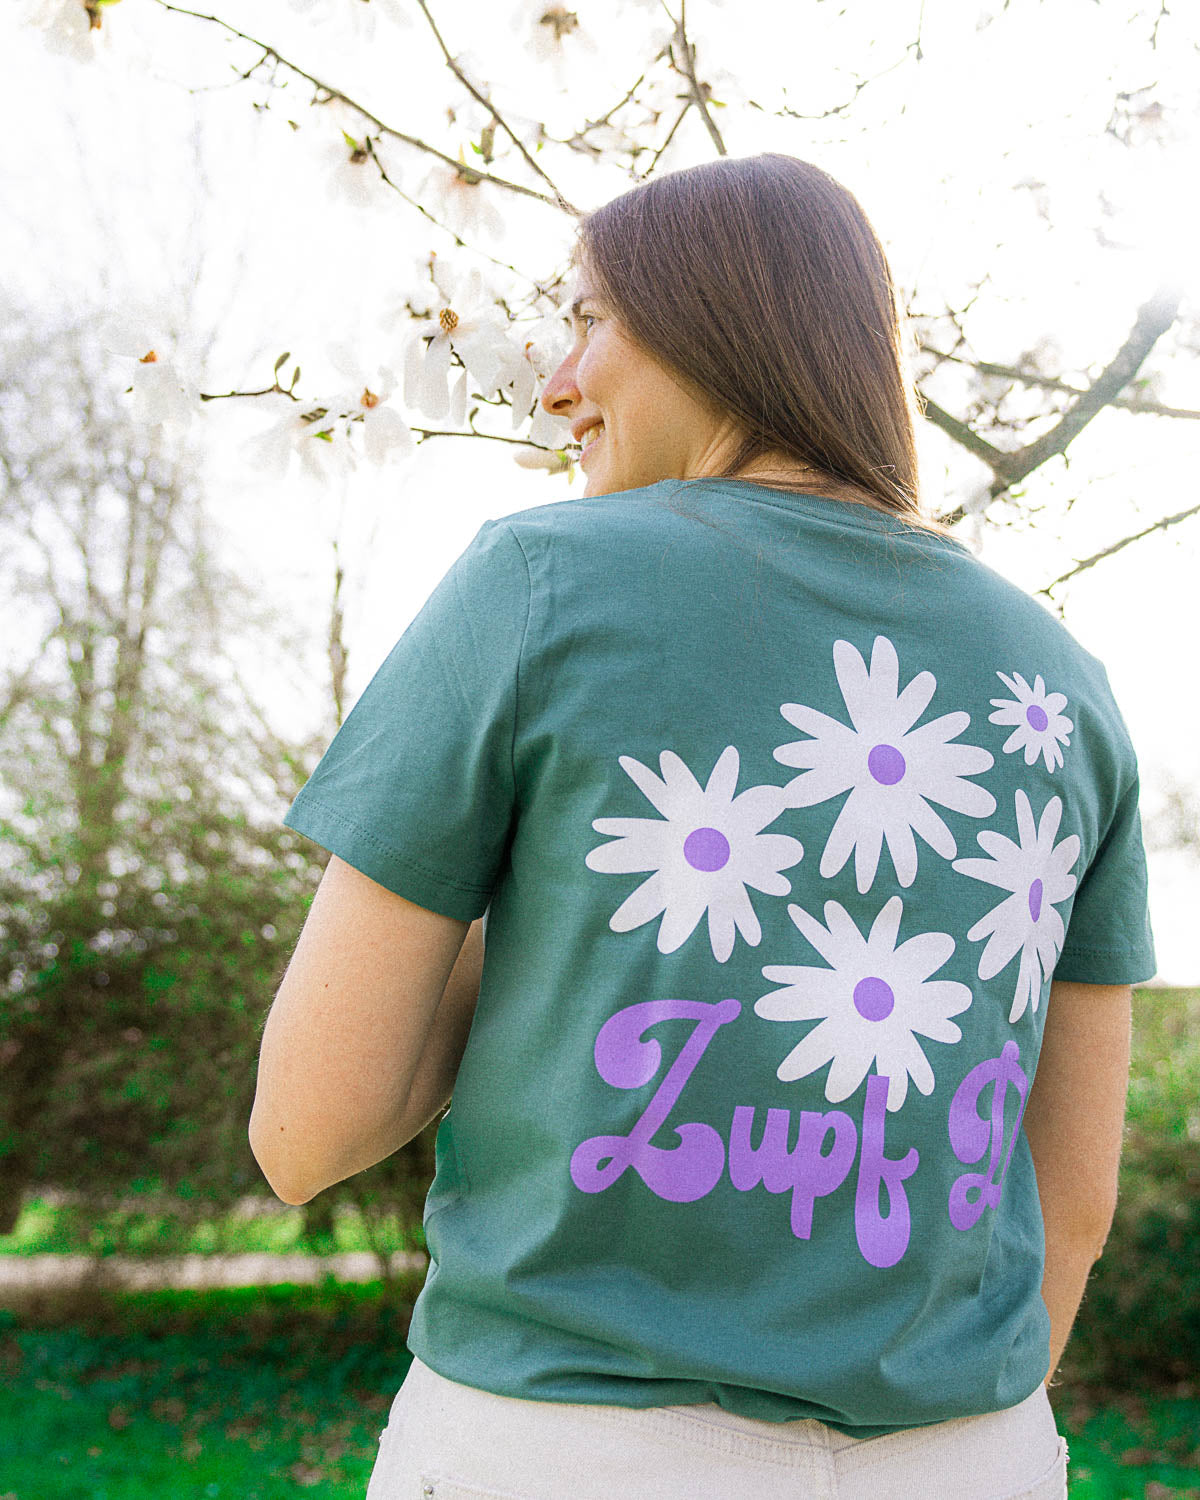 Ein weibliches Model, die in einem Park steht, trägt ein grünes T-Shirt mit weißen Blumen und einem lilanen "Zupf Di!" Schriftzug als Backprint Motiv.